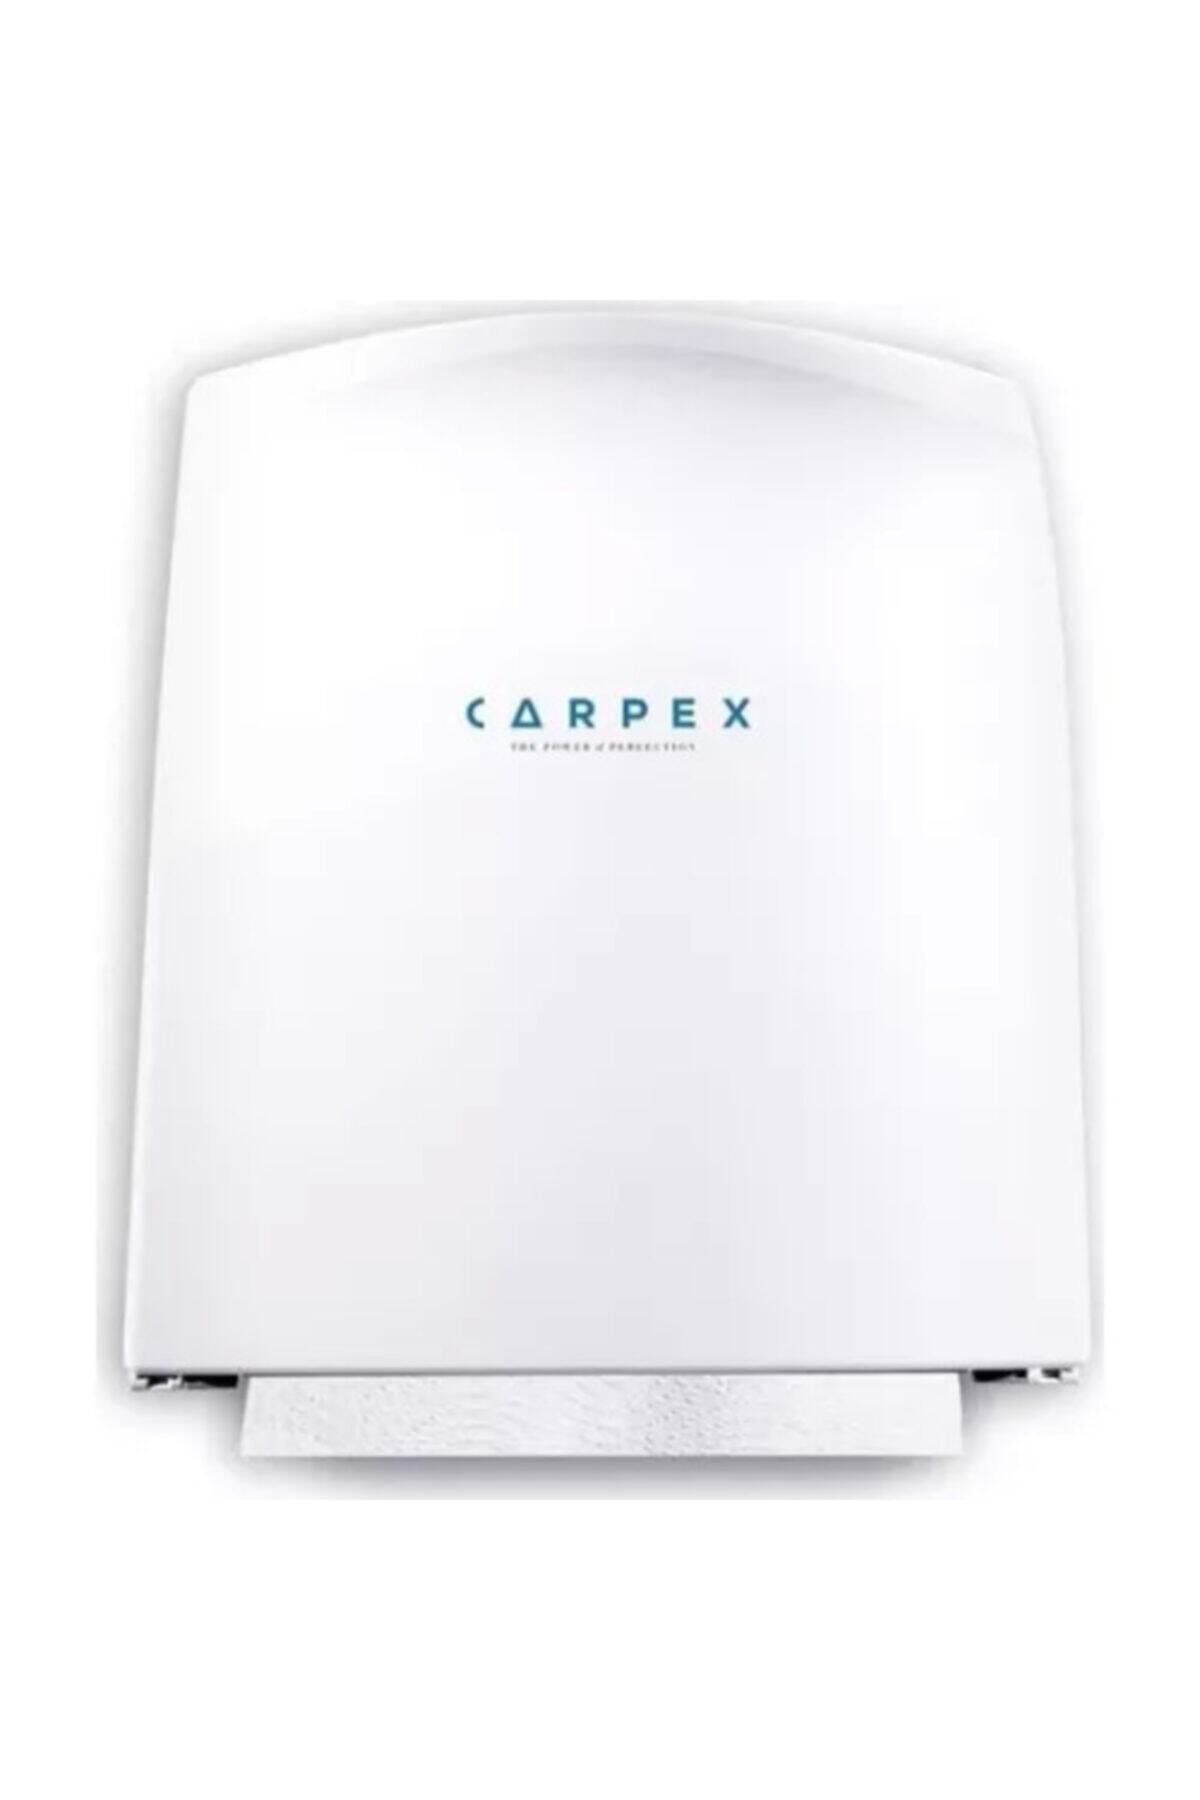 Carpex Autocut Manuel Kağıt Havlu Makinesi Havlu Dispenseri